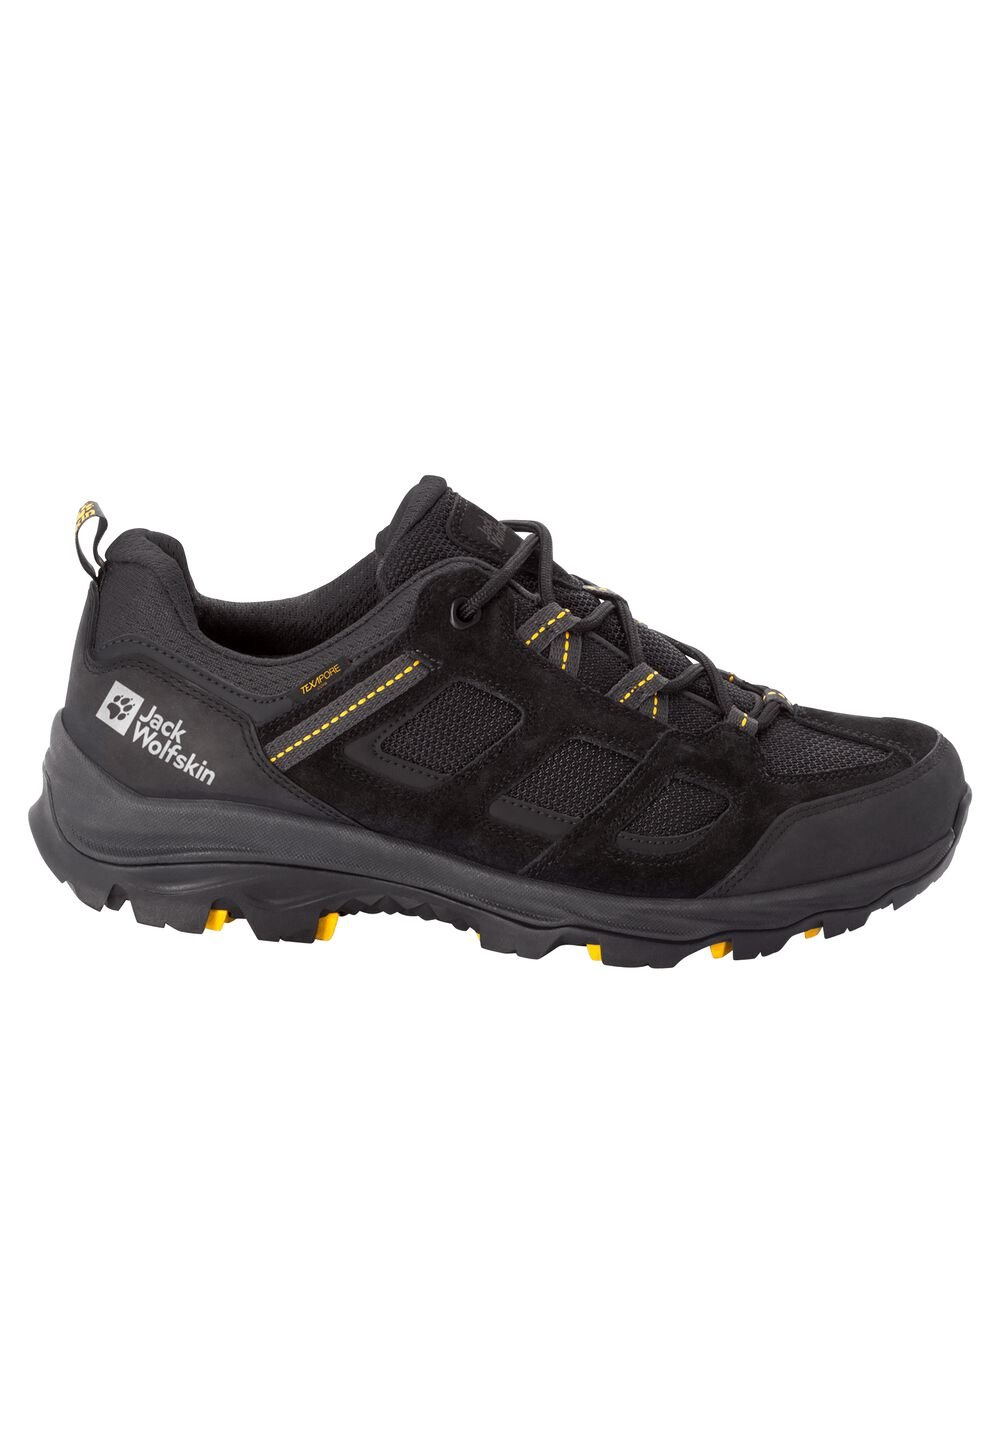 Chaussures de randonnée imperméables hommes Vojo 3 Texapore Low Men 11 noir black / burly yellow XT